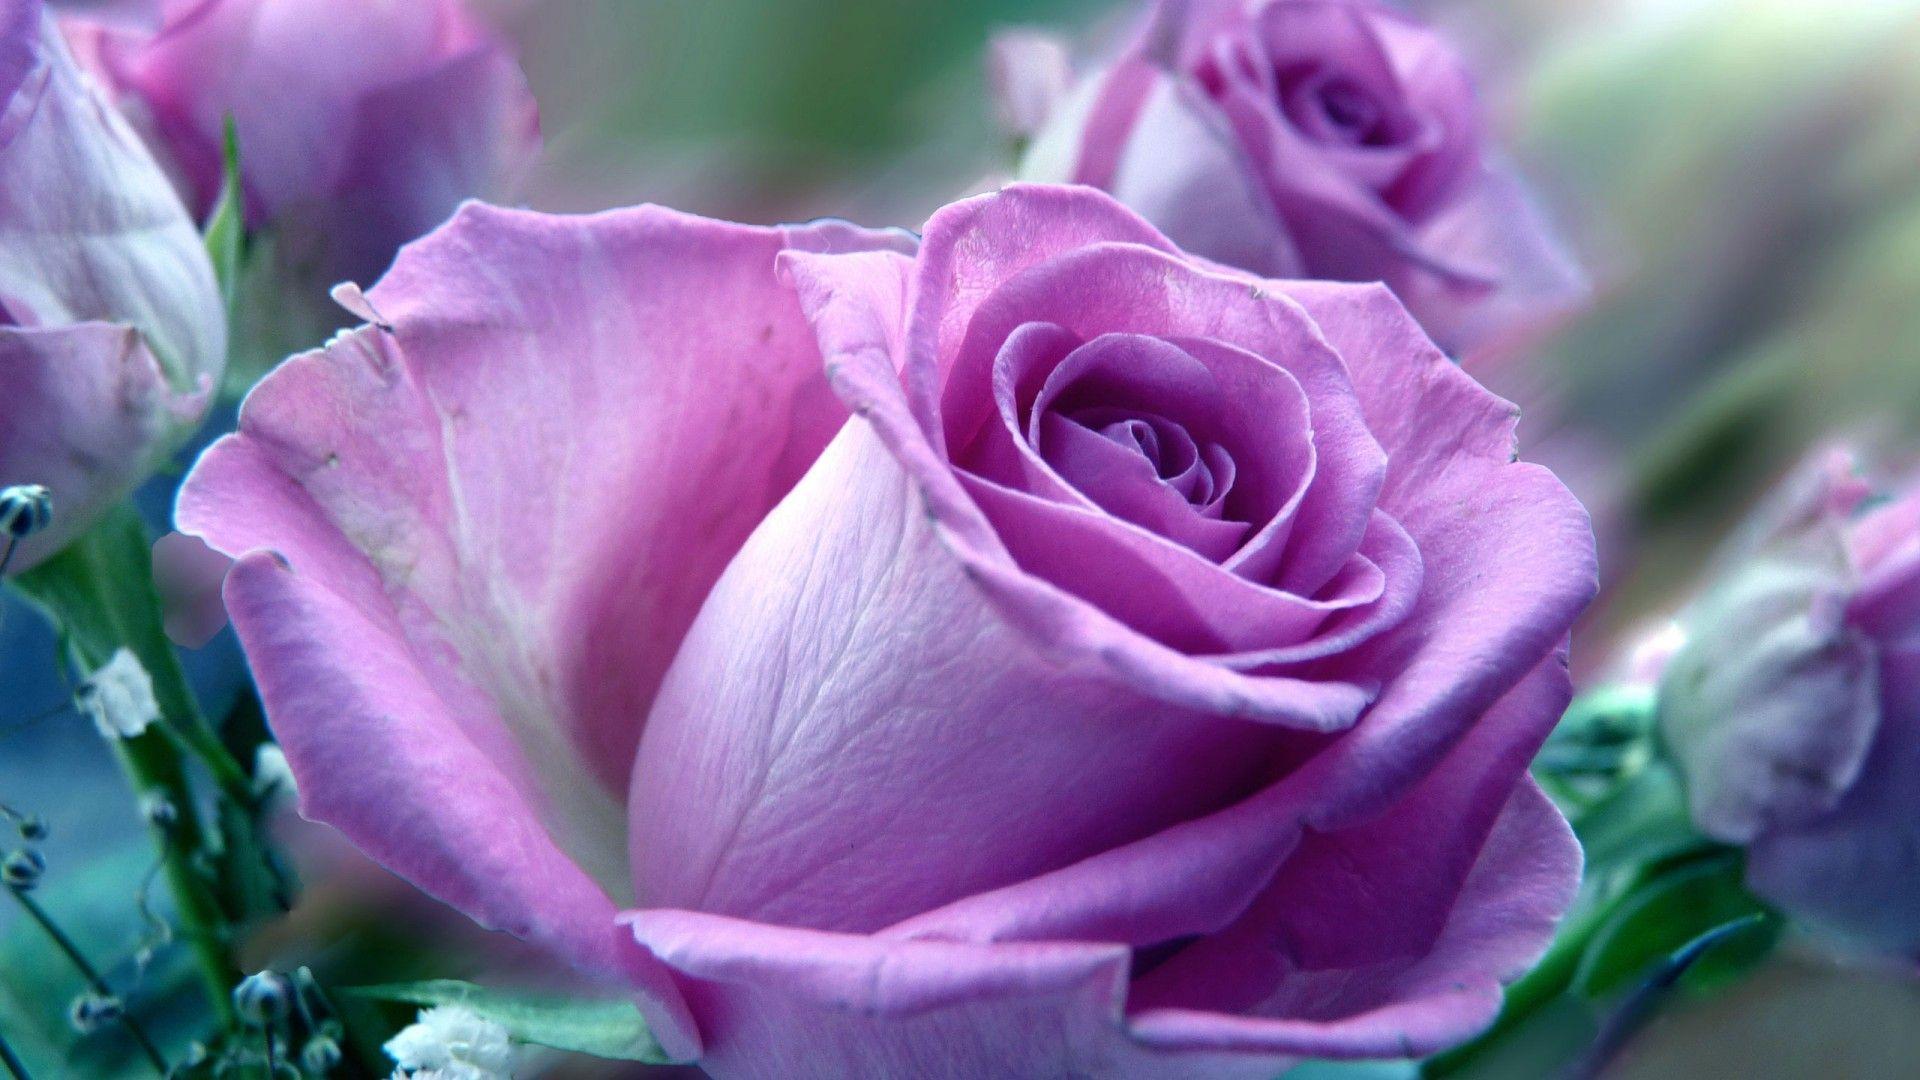 Wallpaper Of Purple Rose Flowers Picture 5 HD Wallpaper. Hdwalljoy